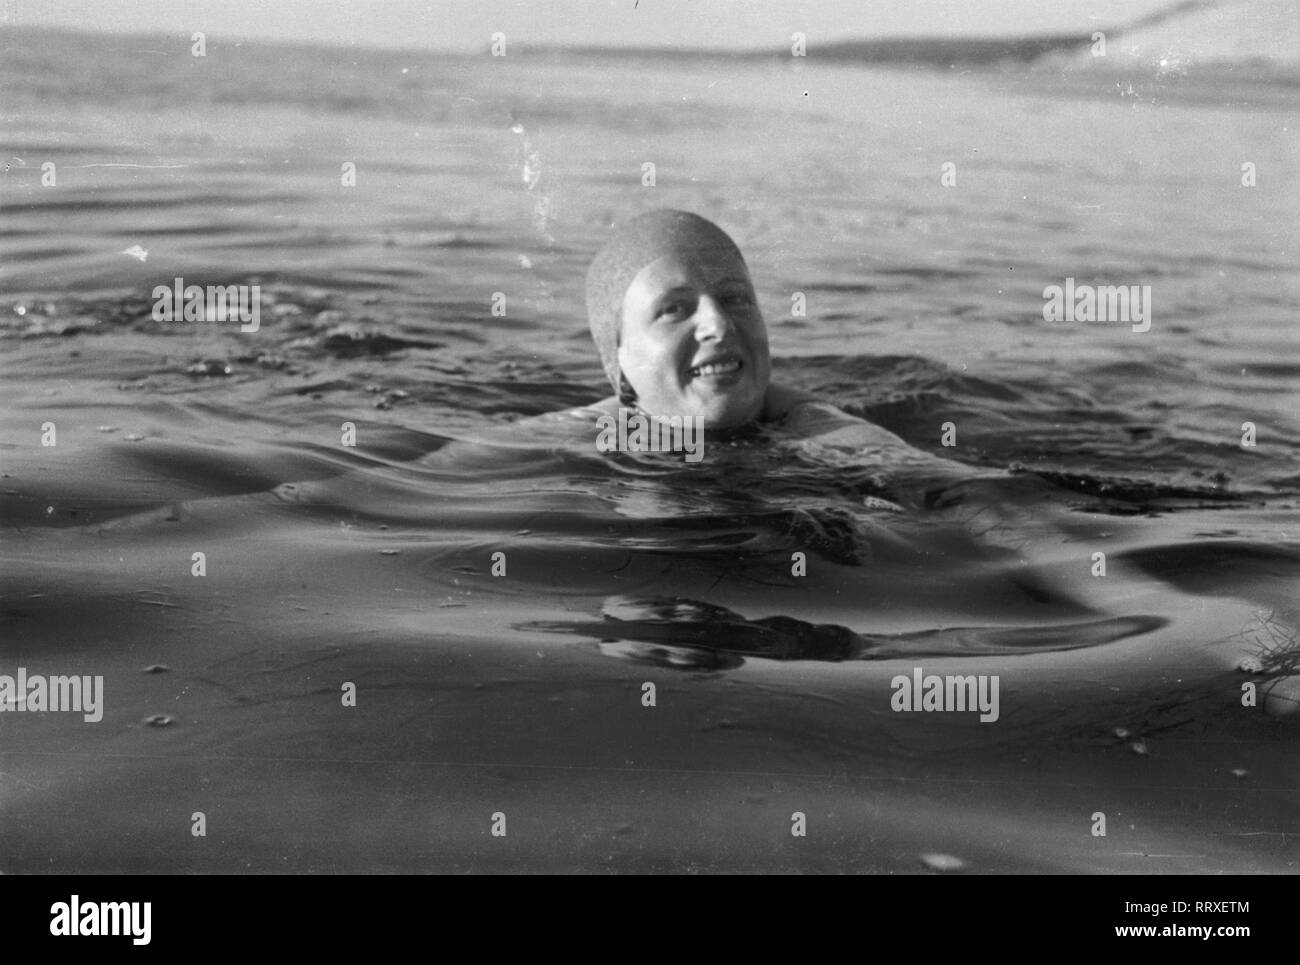 Donna - Frau, Wasser, vedere, Meer, Schwimmen, Badehaube, Badekappe, 1950er, 1950s Foto Stock